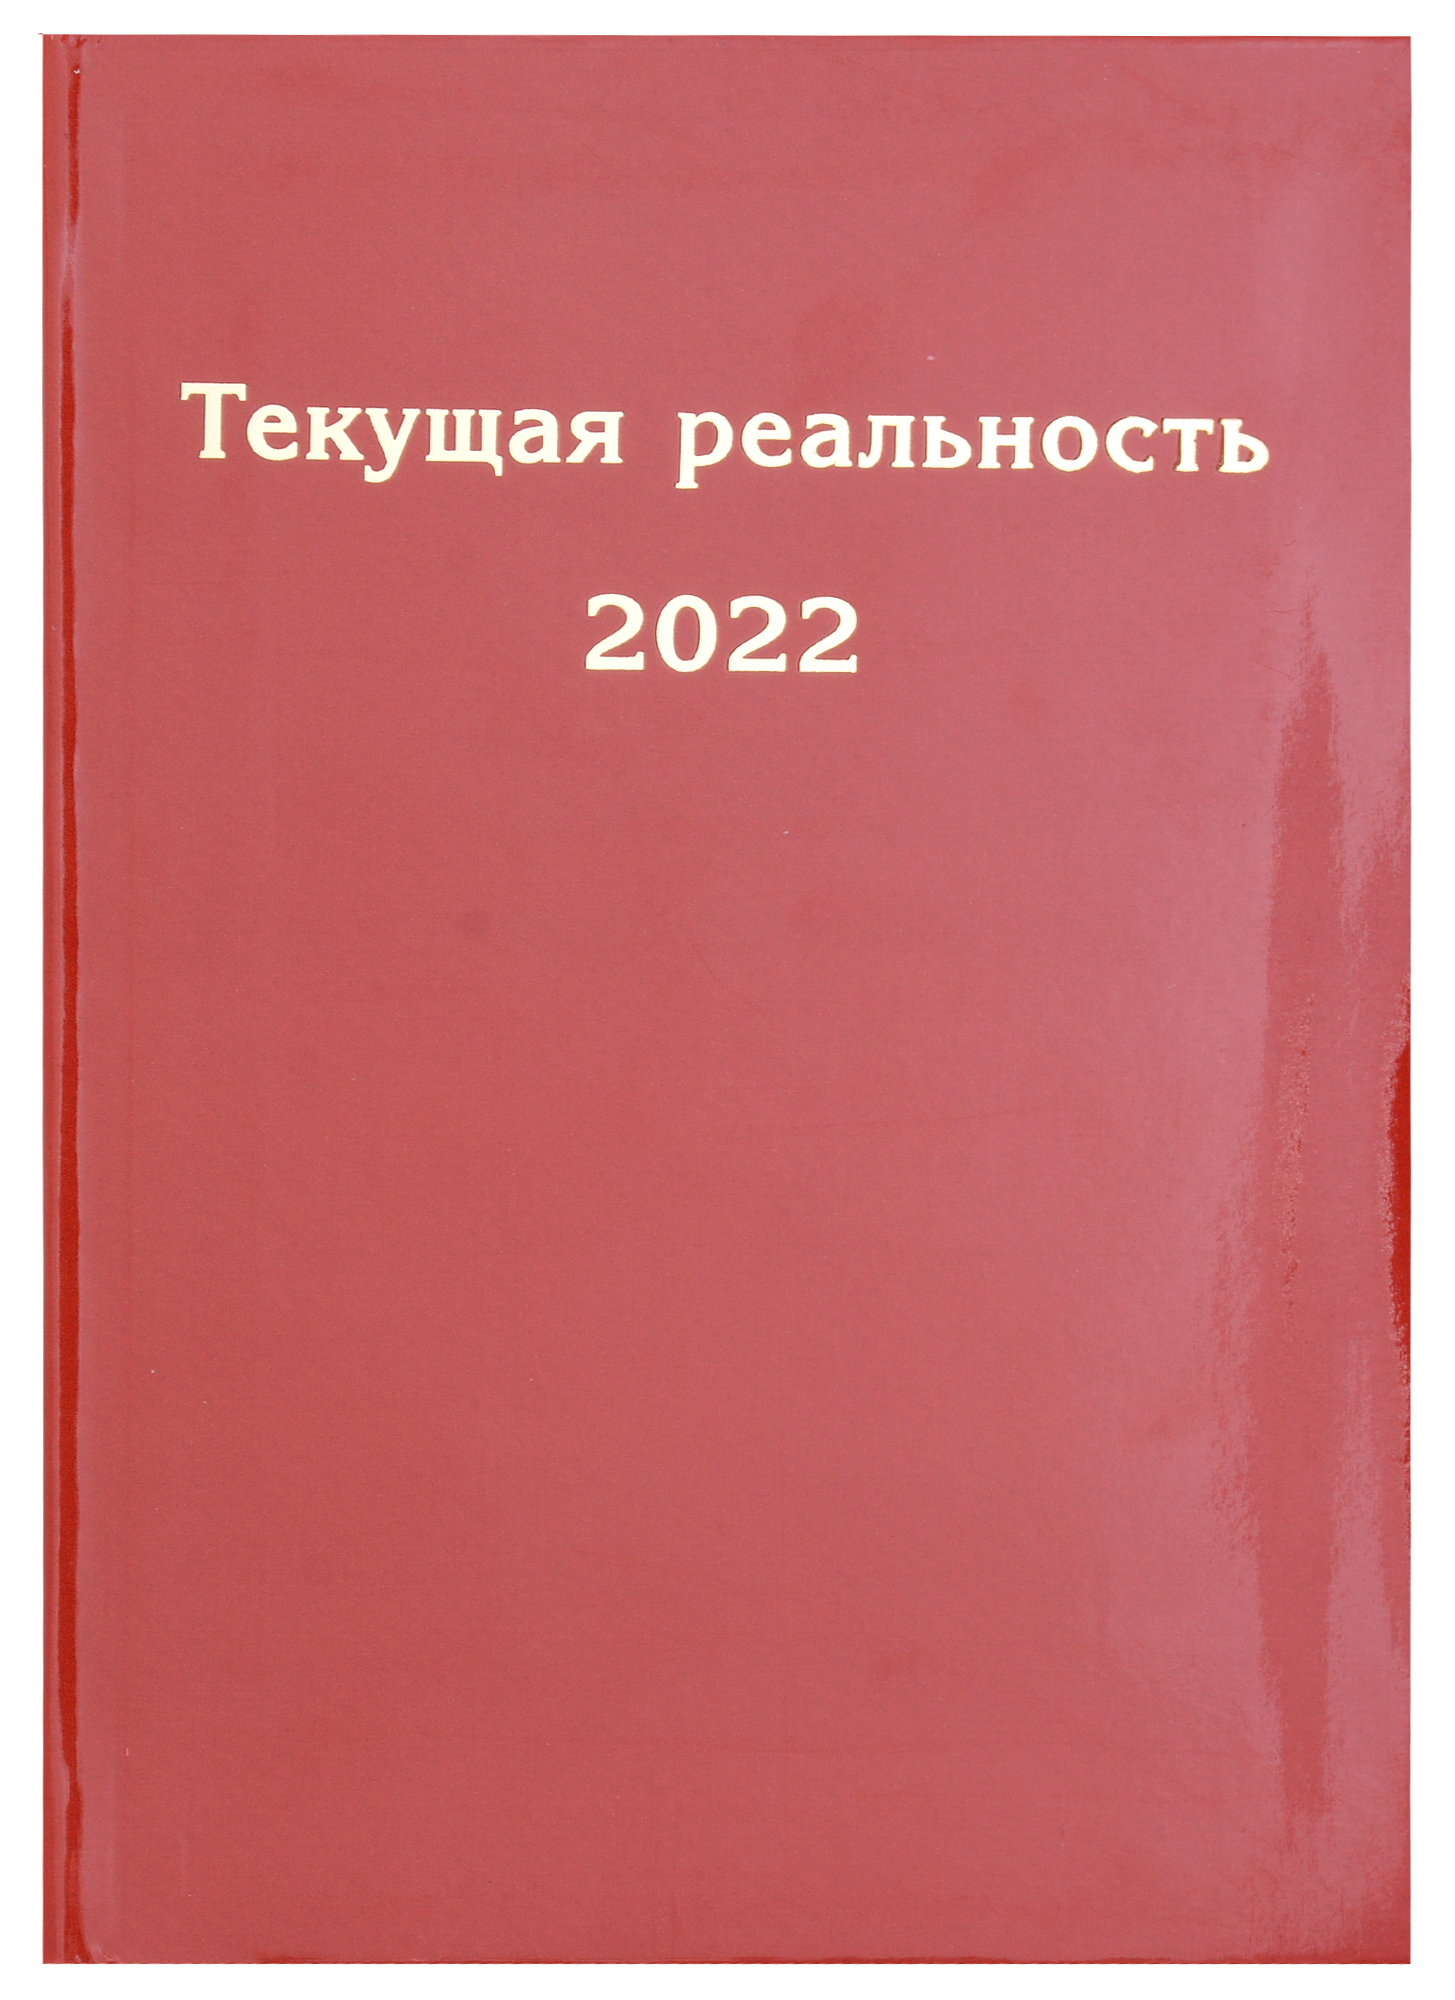   2022.  